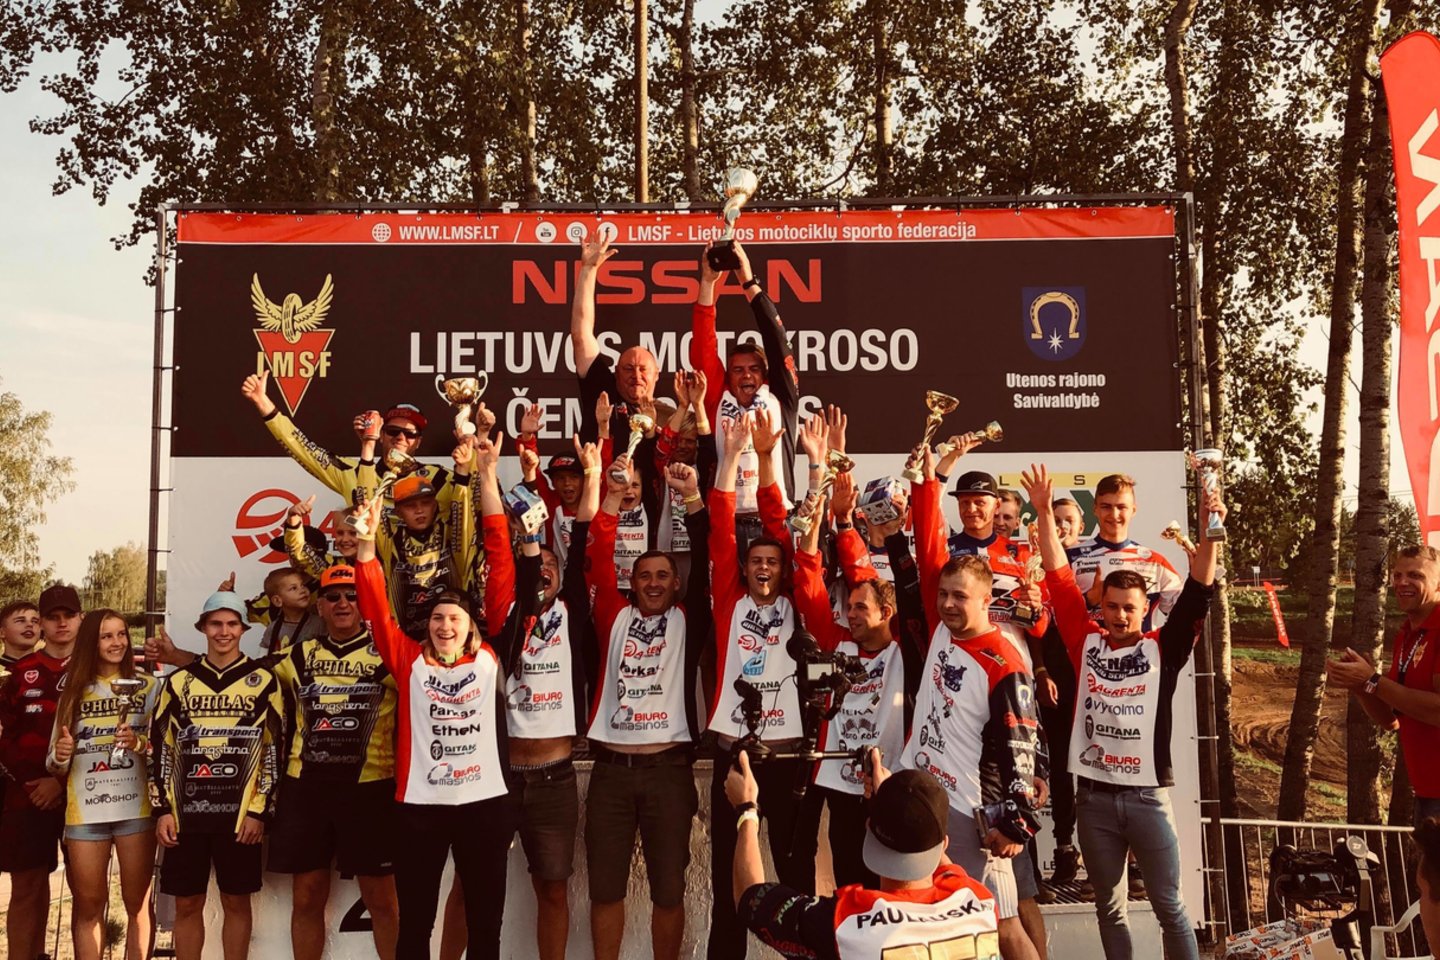  2018 metų Lietuvos motokroso čempionato etapo akimirkos.<br> Organizatorių nuotr.